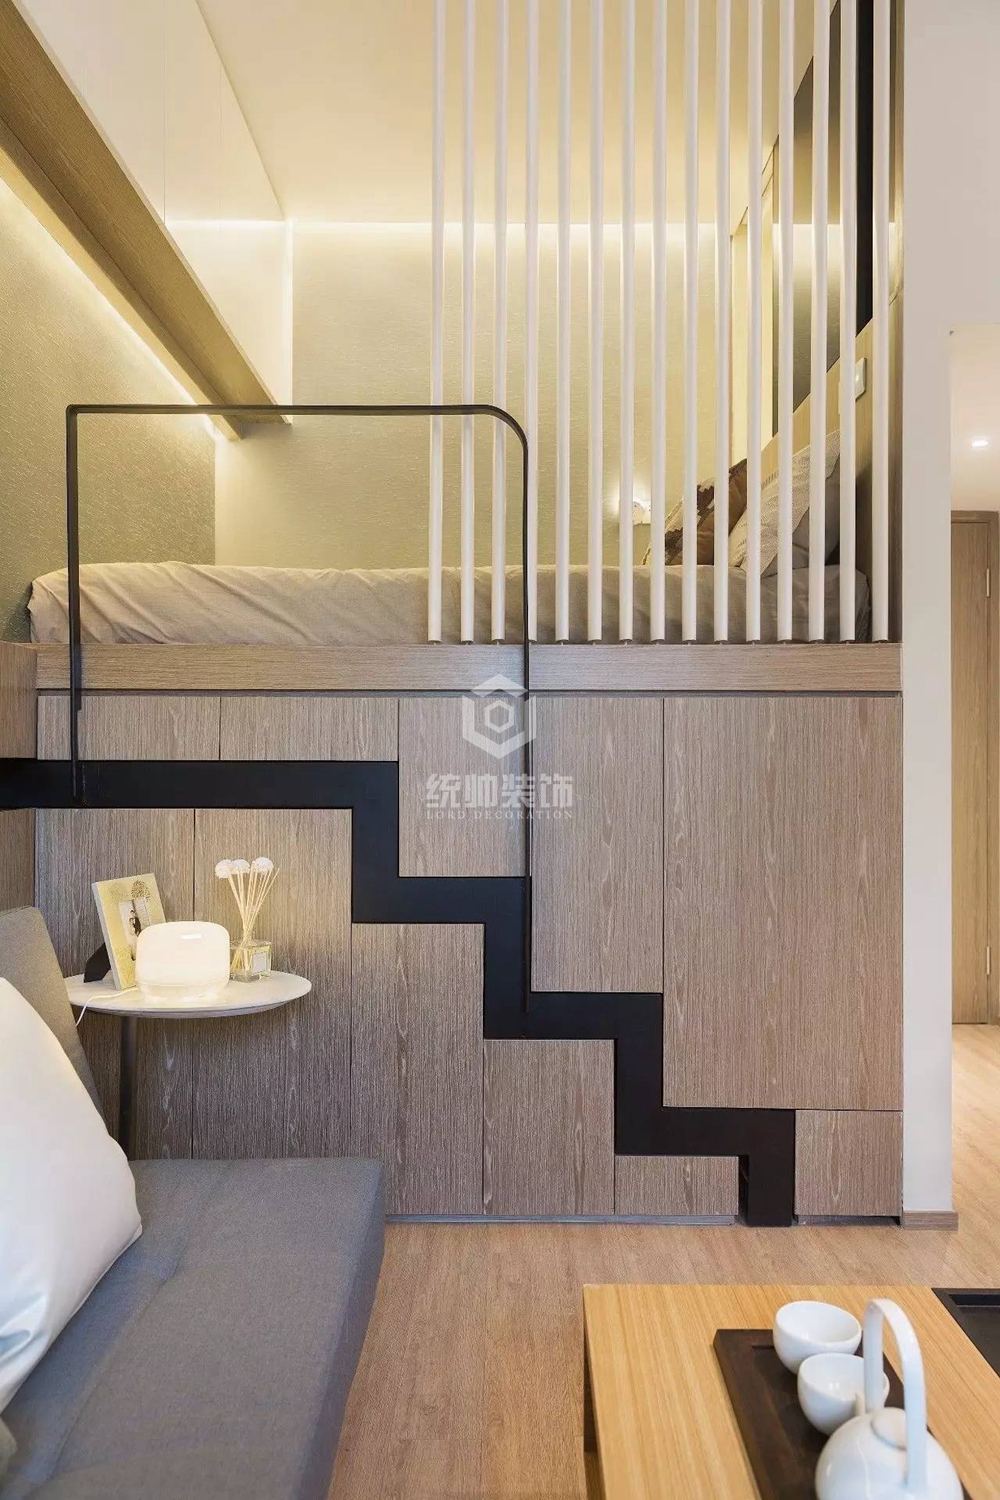 杨浦区控江五村60平方现代简约风格平层客厅装修效果图